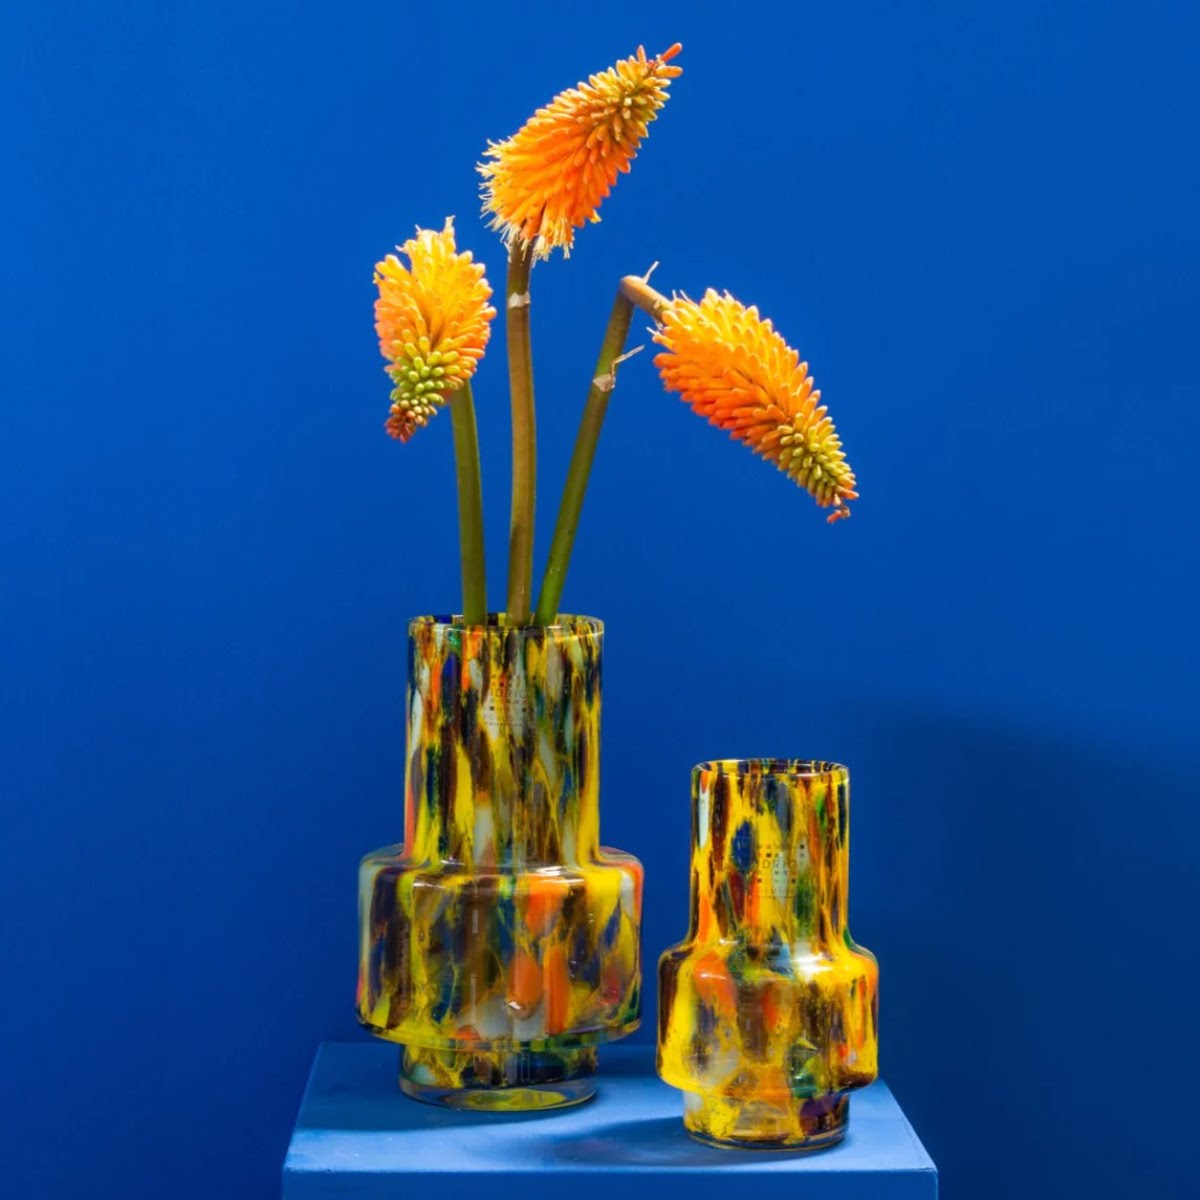 Storeen Handblown Glass Vase, €55